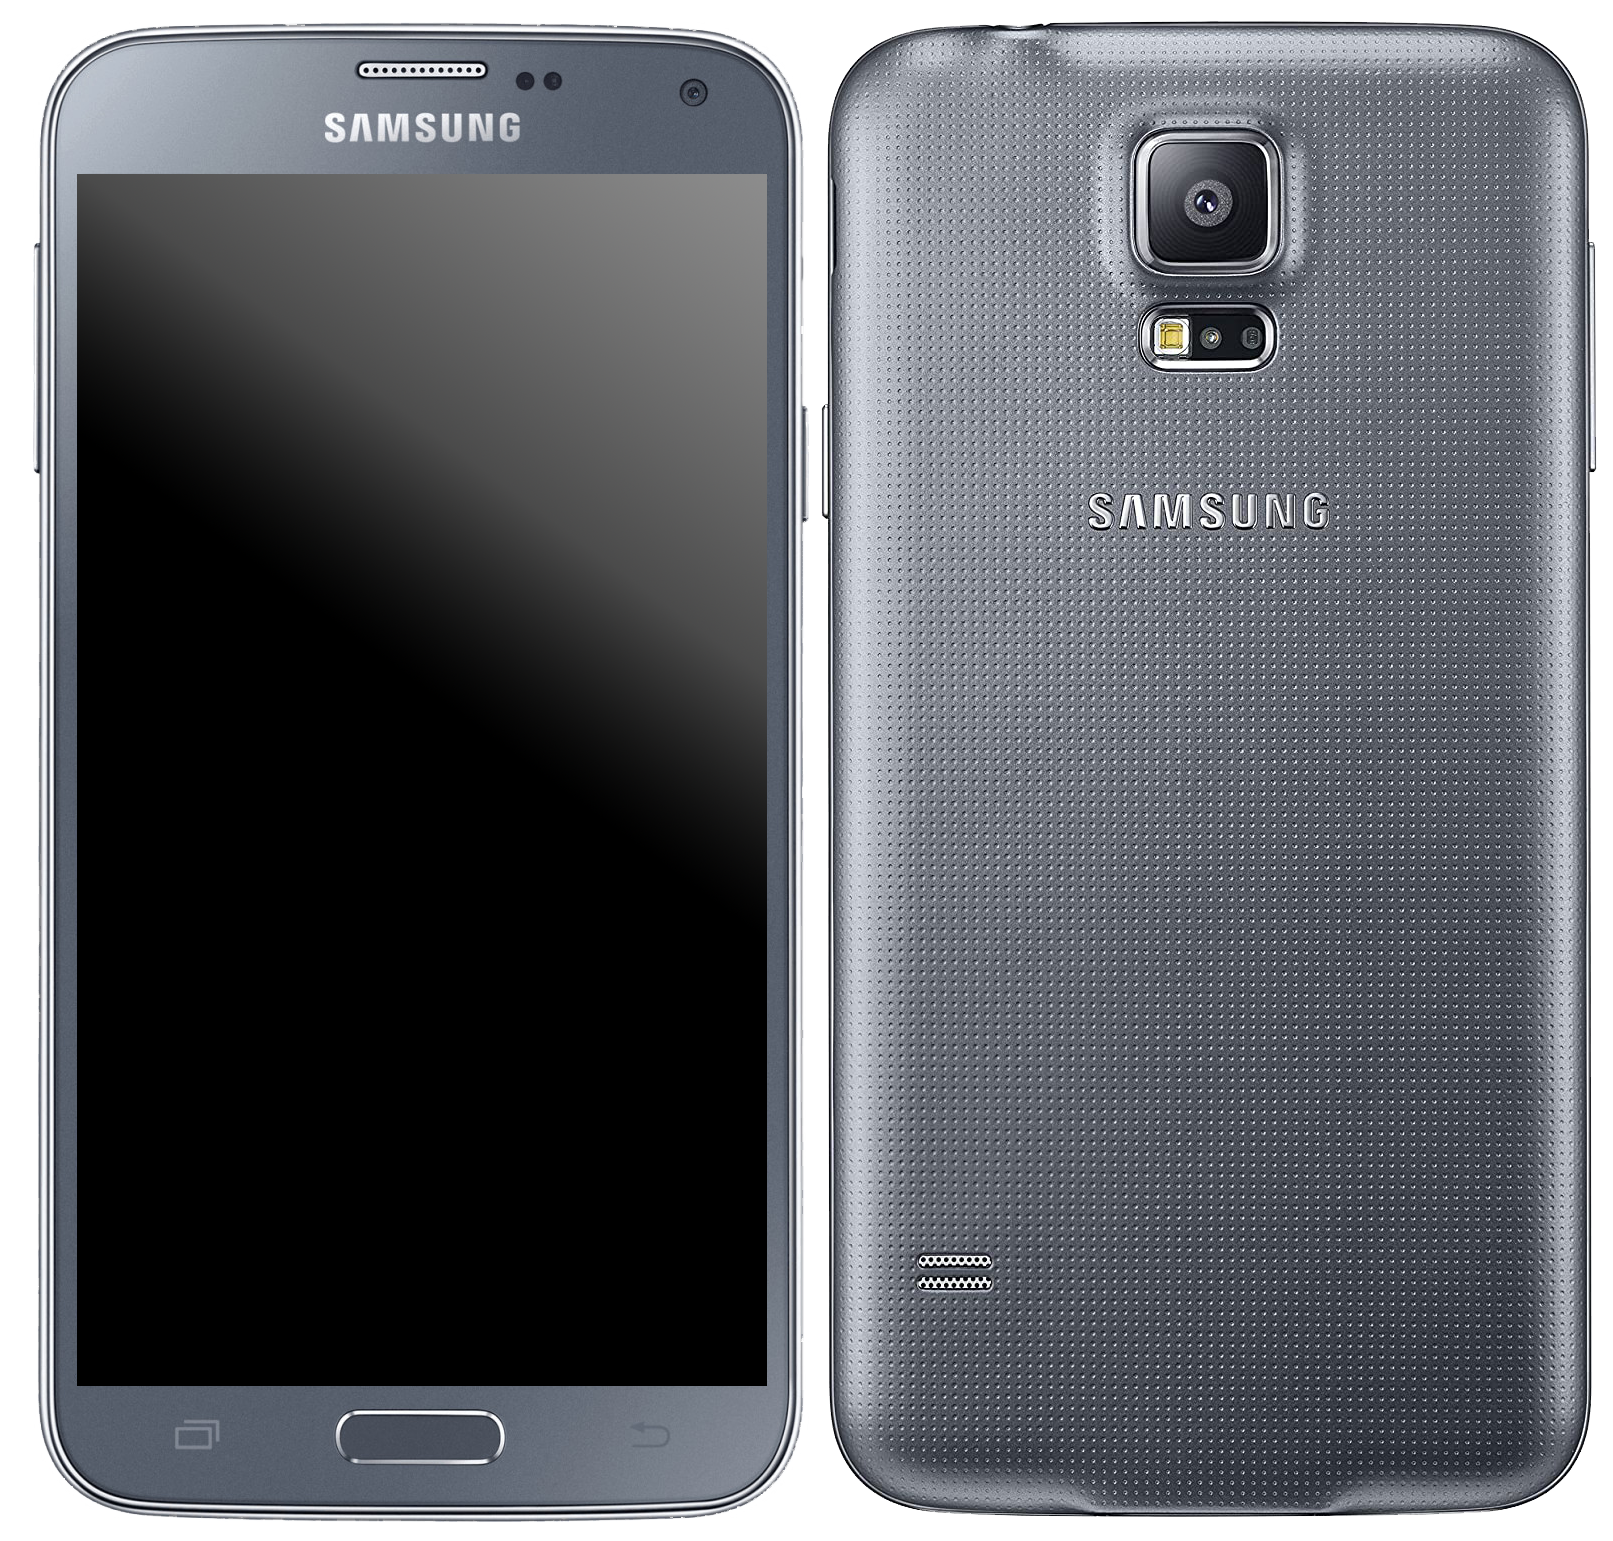 Samsung Galaxy s5 Neo silber - Onhe Vertrag